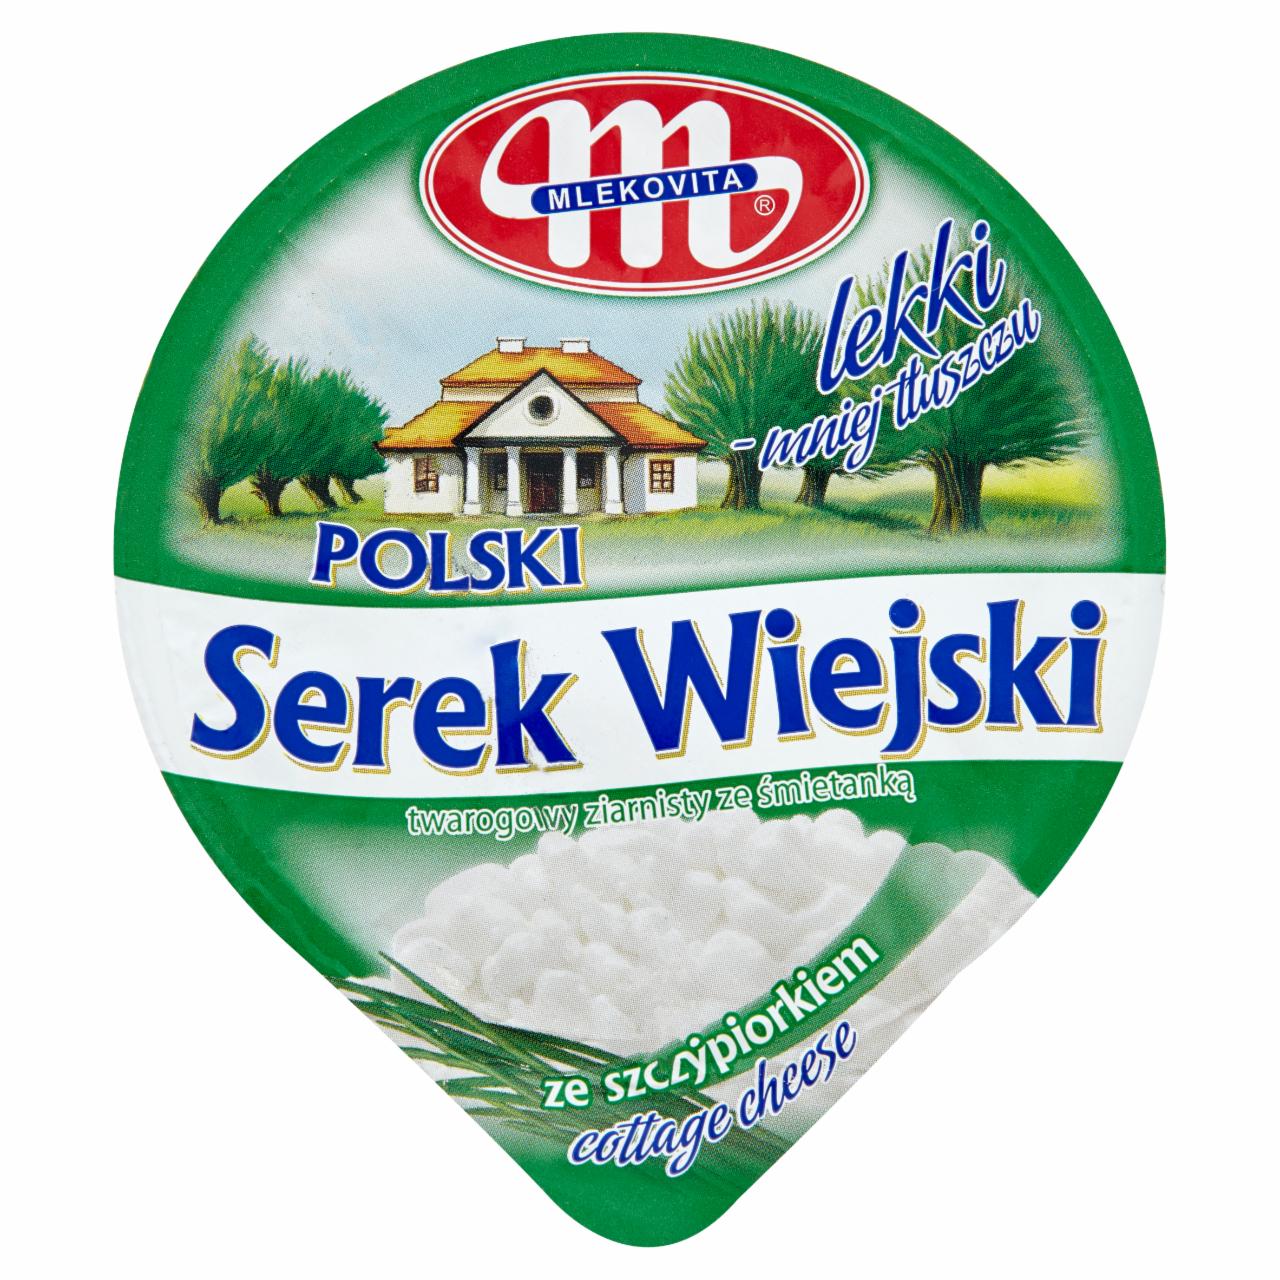 Photo - Mlekovita Wiejski Polish Chive Granular Light Curd Cheese 150 g